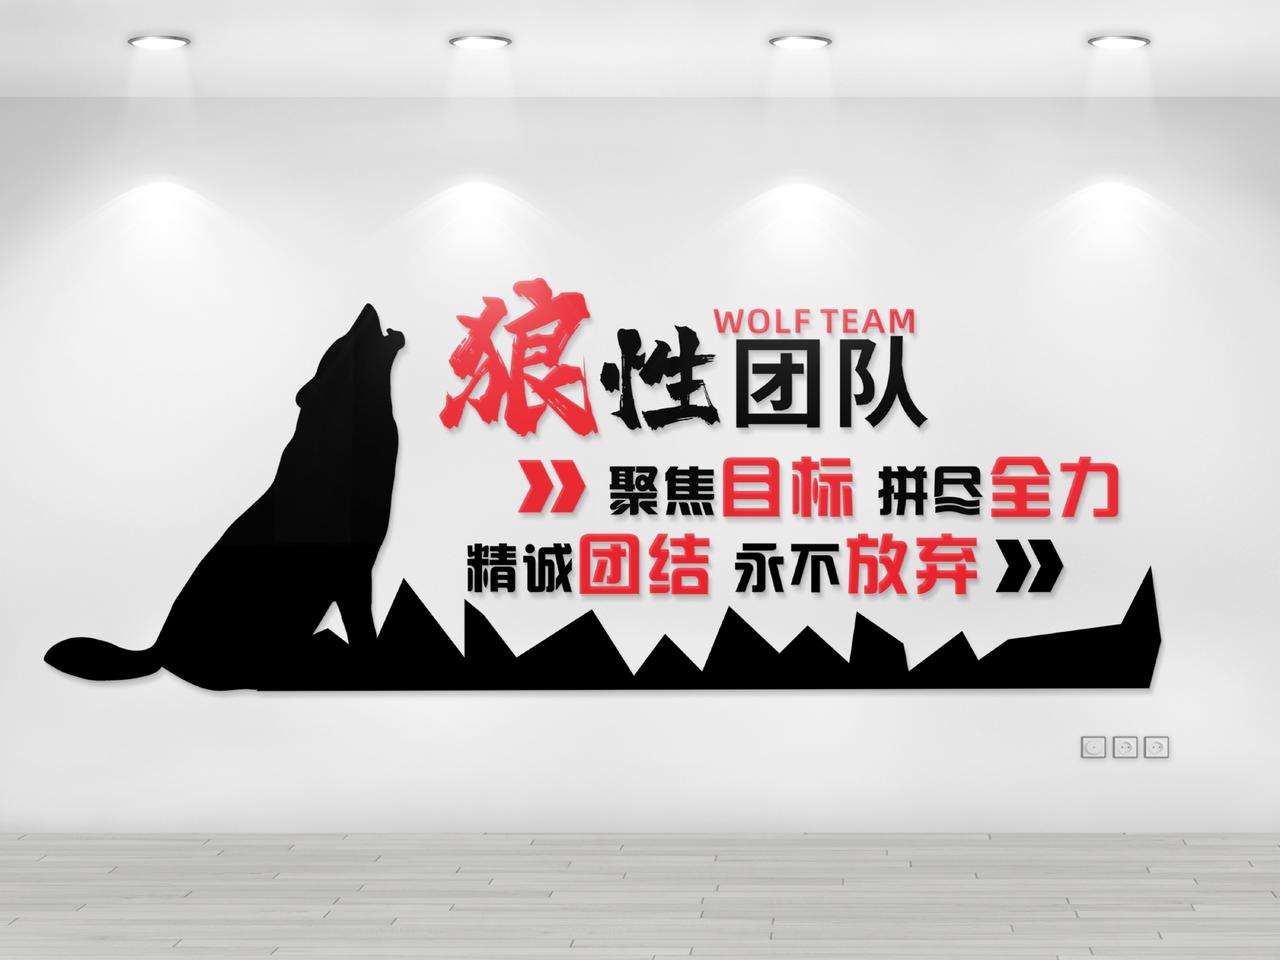 狼狼性团队团队精神企业标语文化墙公司文化墙励志标语企业文化墙